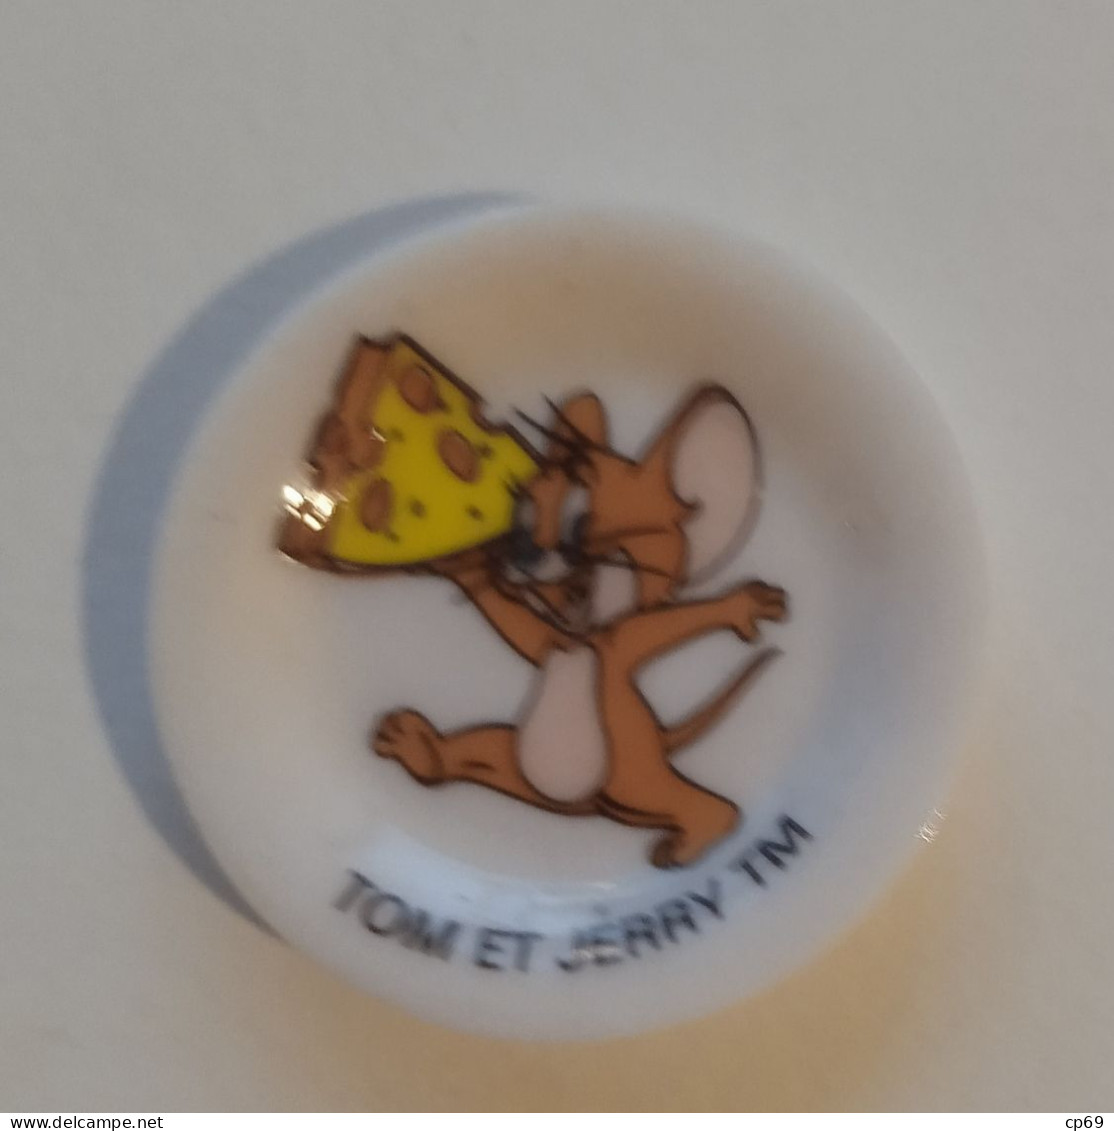 Fève Jerry Souris Topo Mouse 老鼠 TM Warner Bros Format 3 Cm X 3 Cm En TB.Etat - Dessins Animés